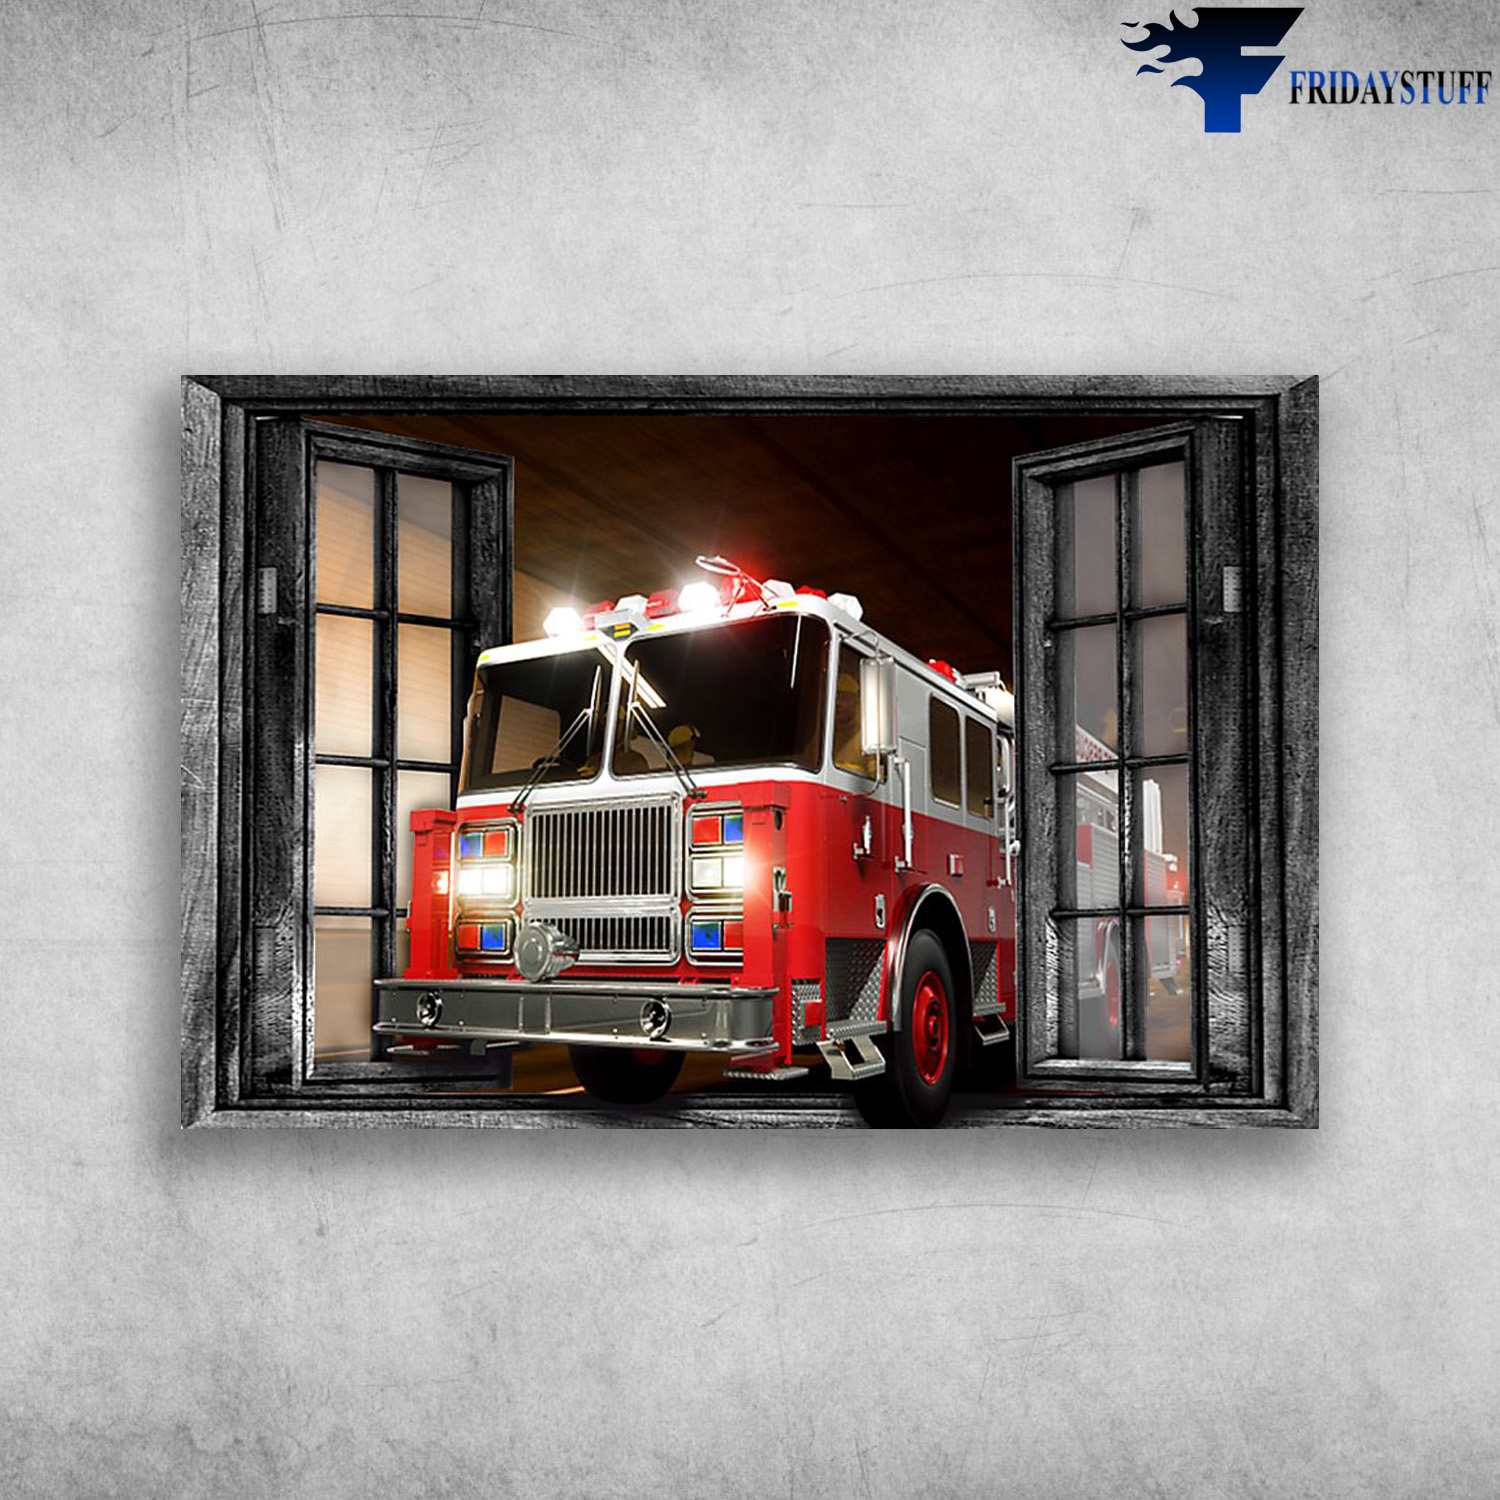 Fire Truck Outside The Window